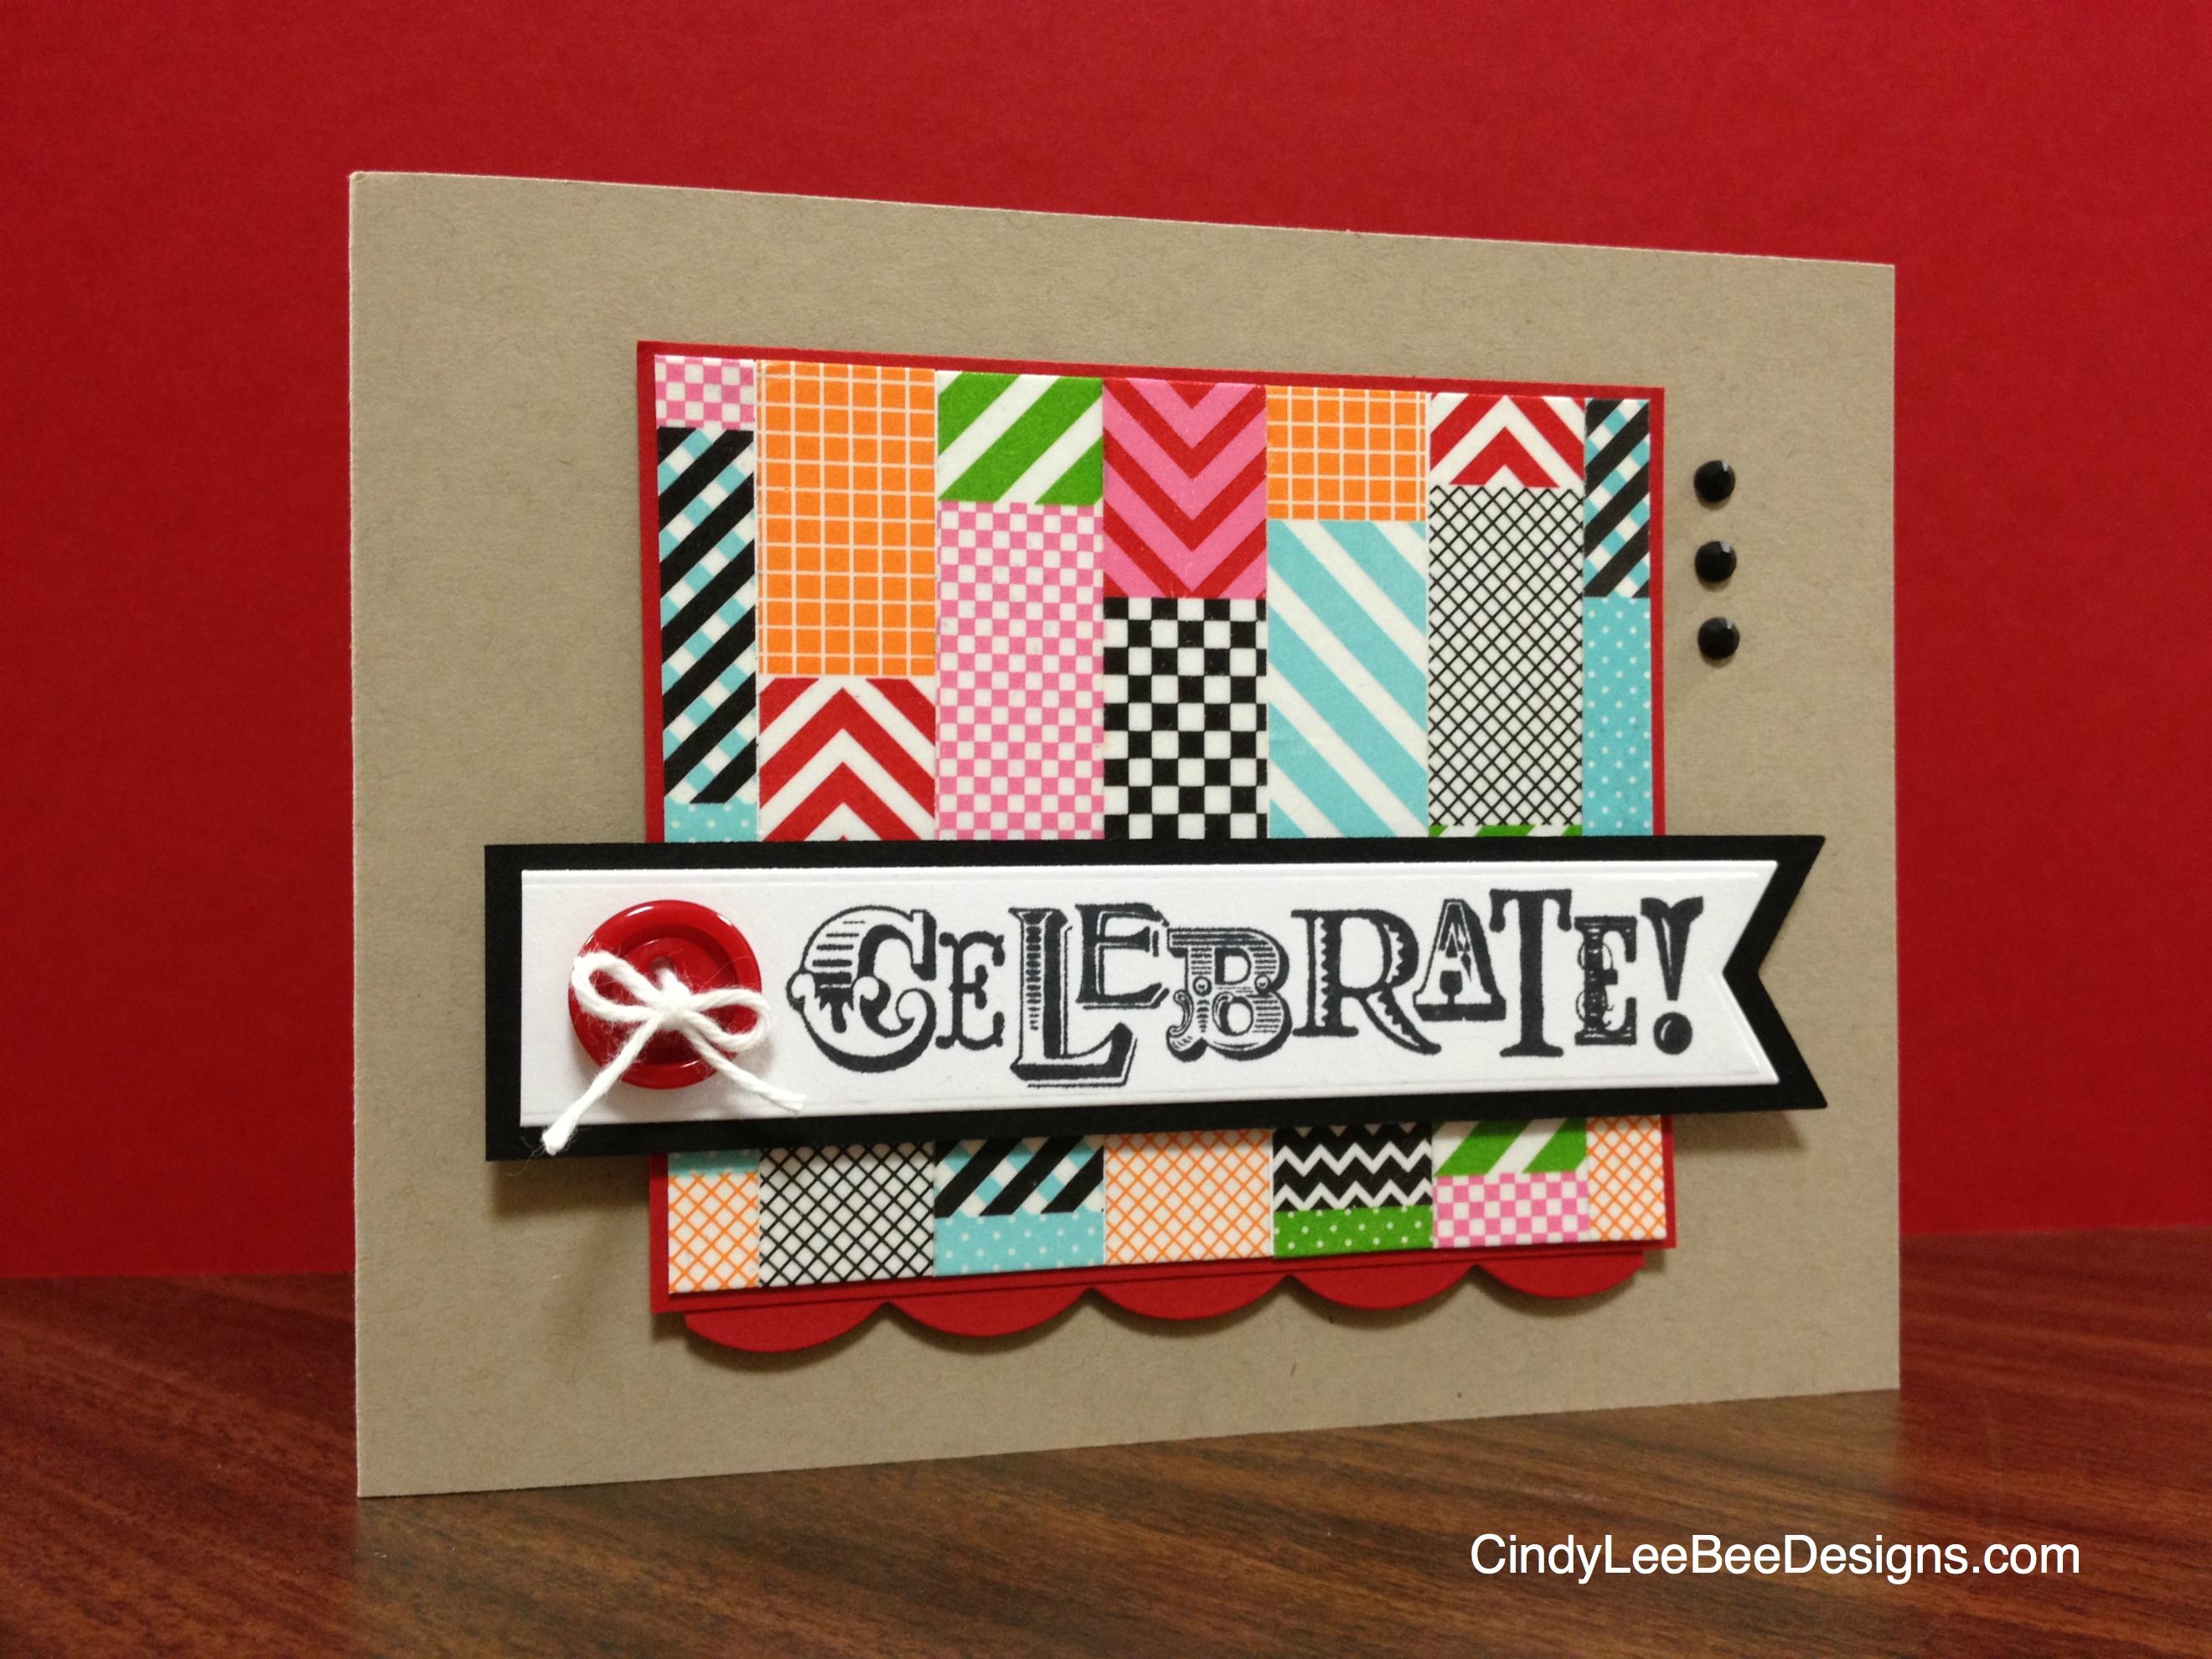 Washi Tape Crafts - Celebrate & Decorate